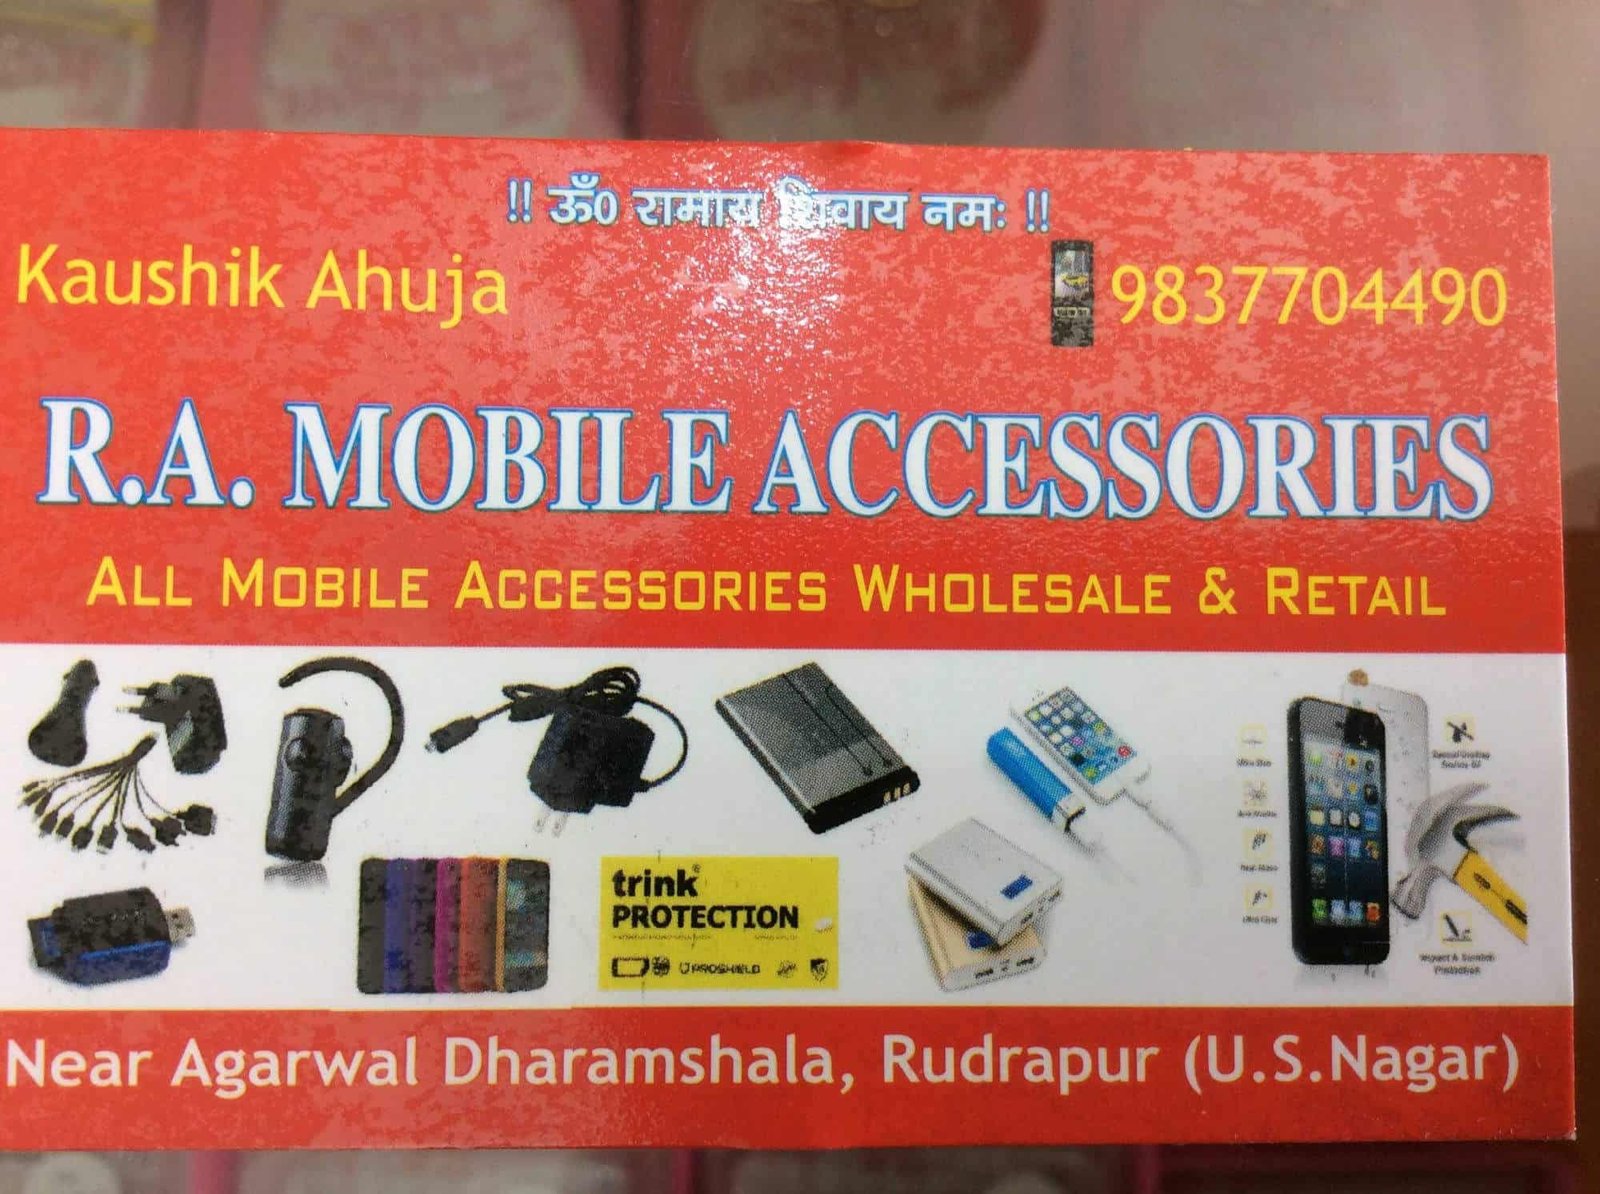 R.A Mobile Accessories